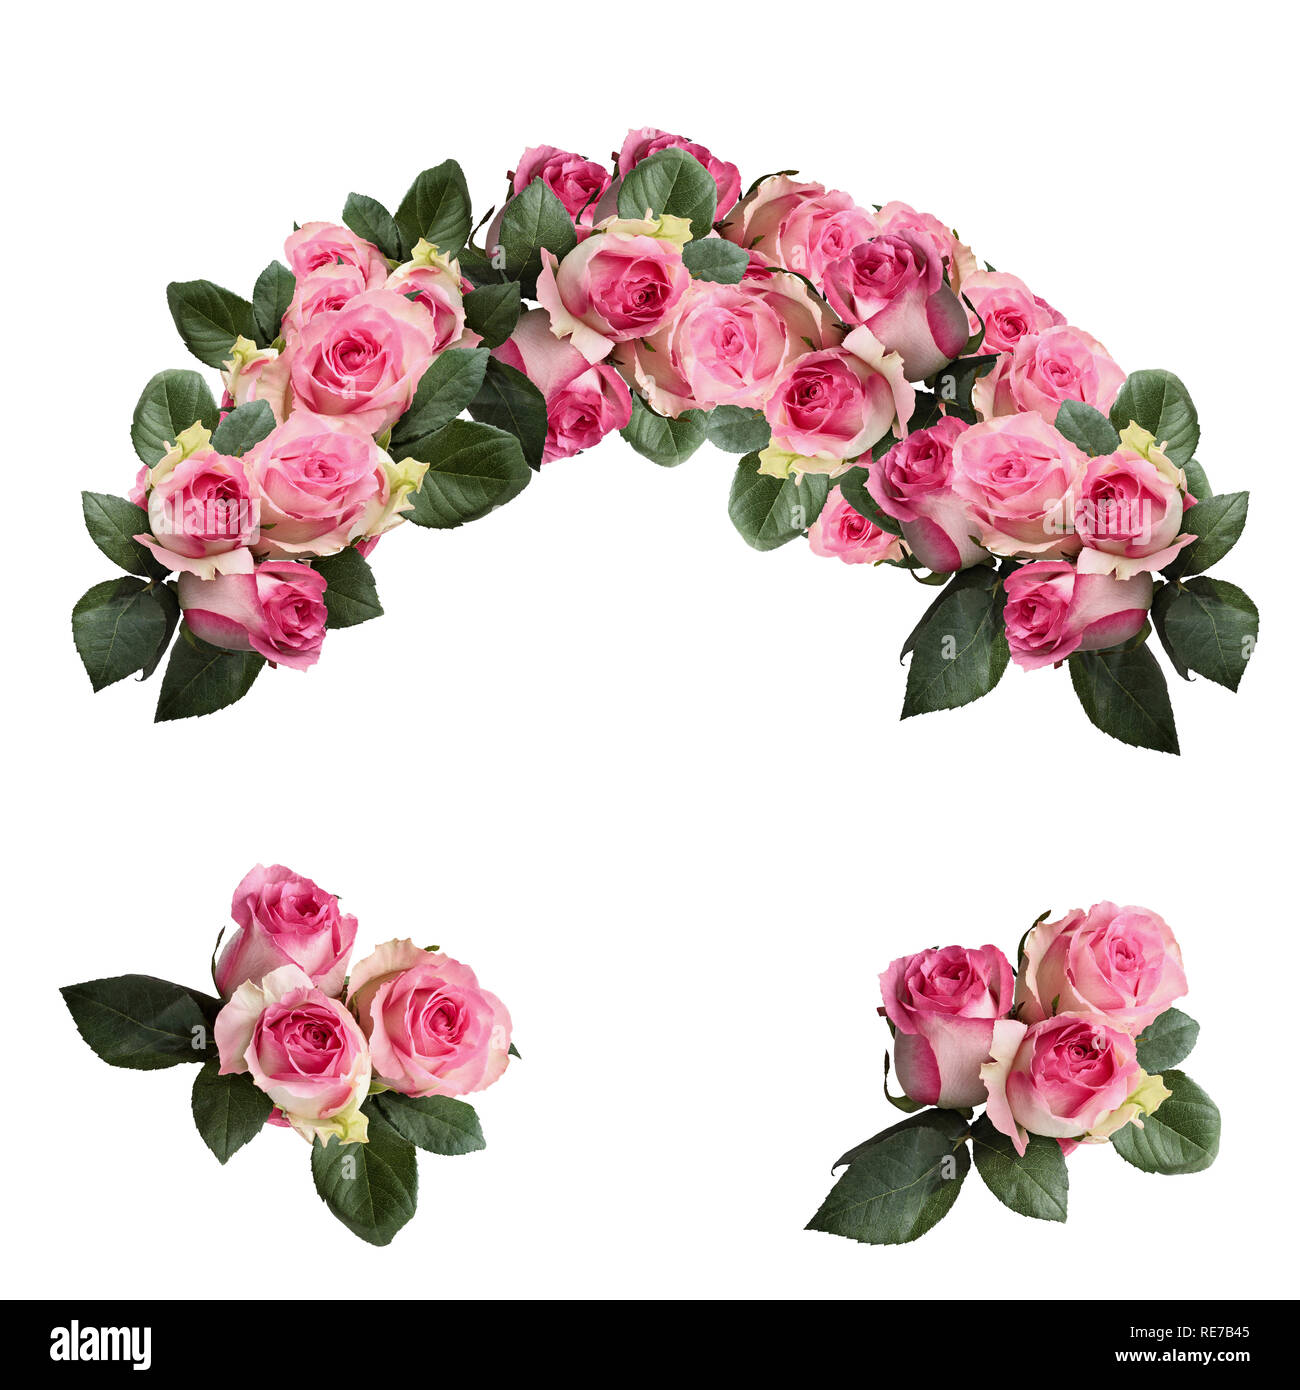 Belles fleurs rose rose et blanc avec des feuilles disposées et isolé sur un fond blanc. Capture d'image en vue de dessus. Banque D'Images